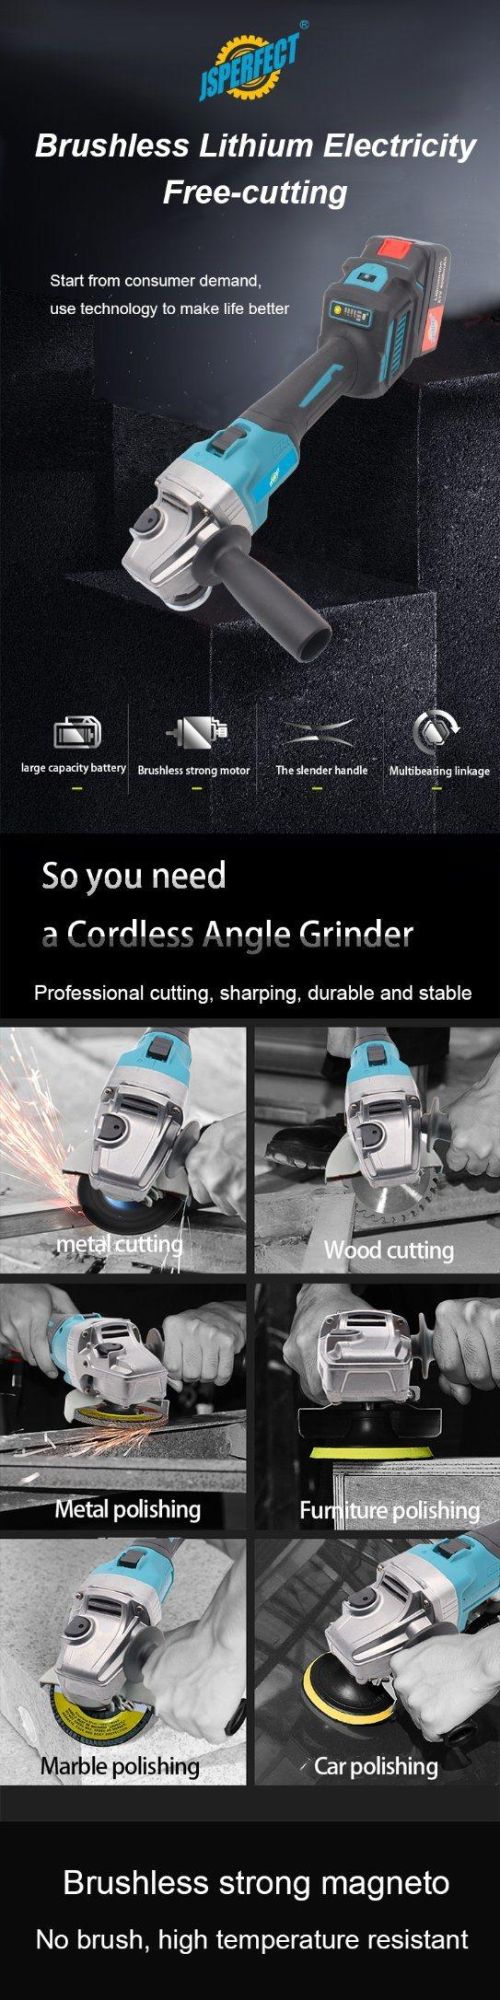 Brushless Cordless Impact Angle Grinder